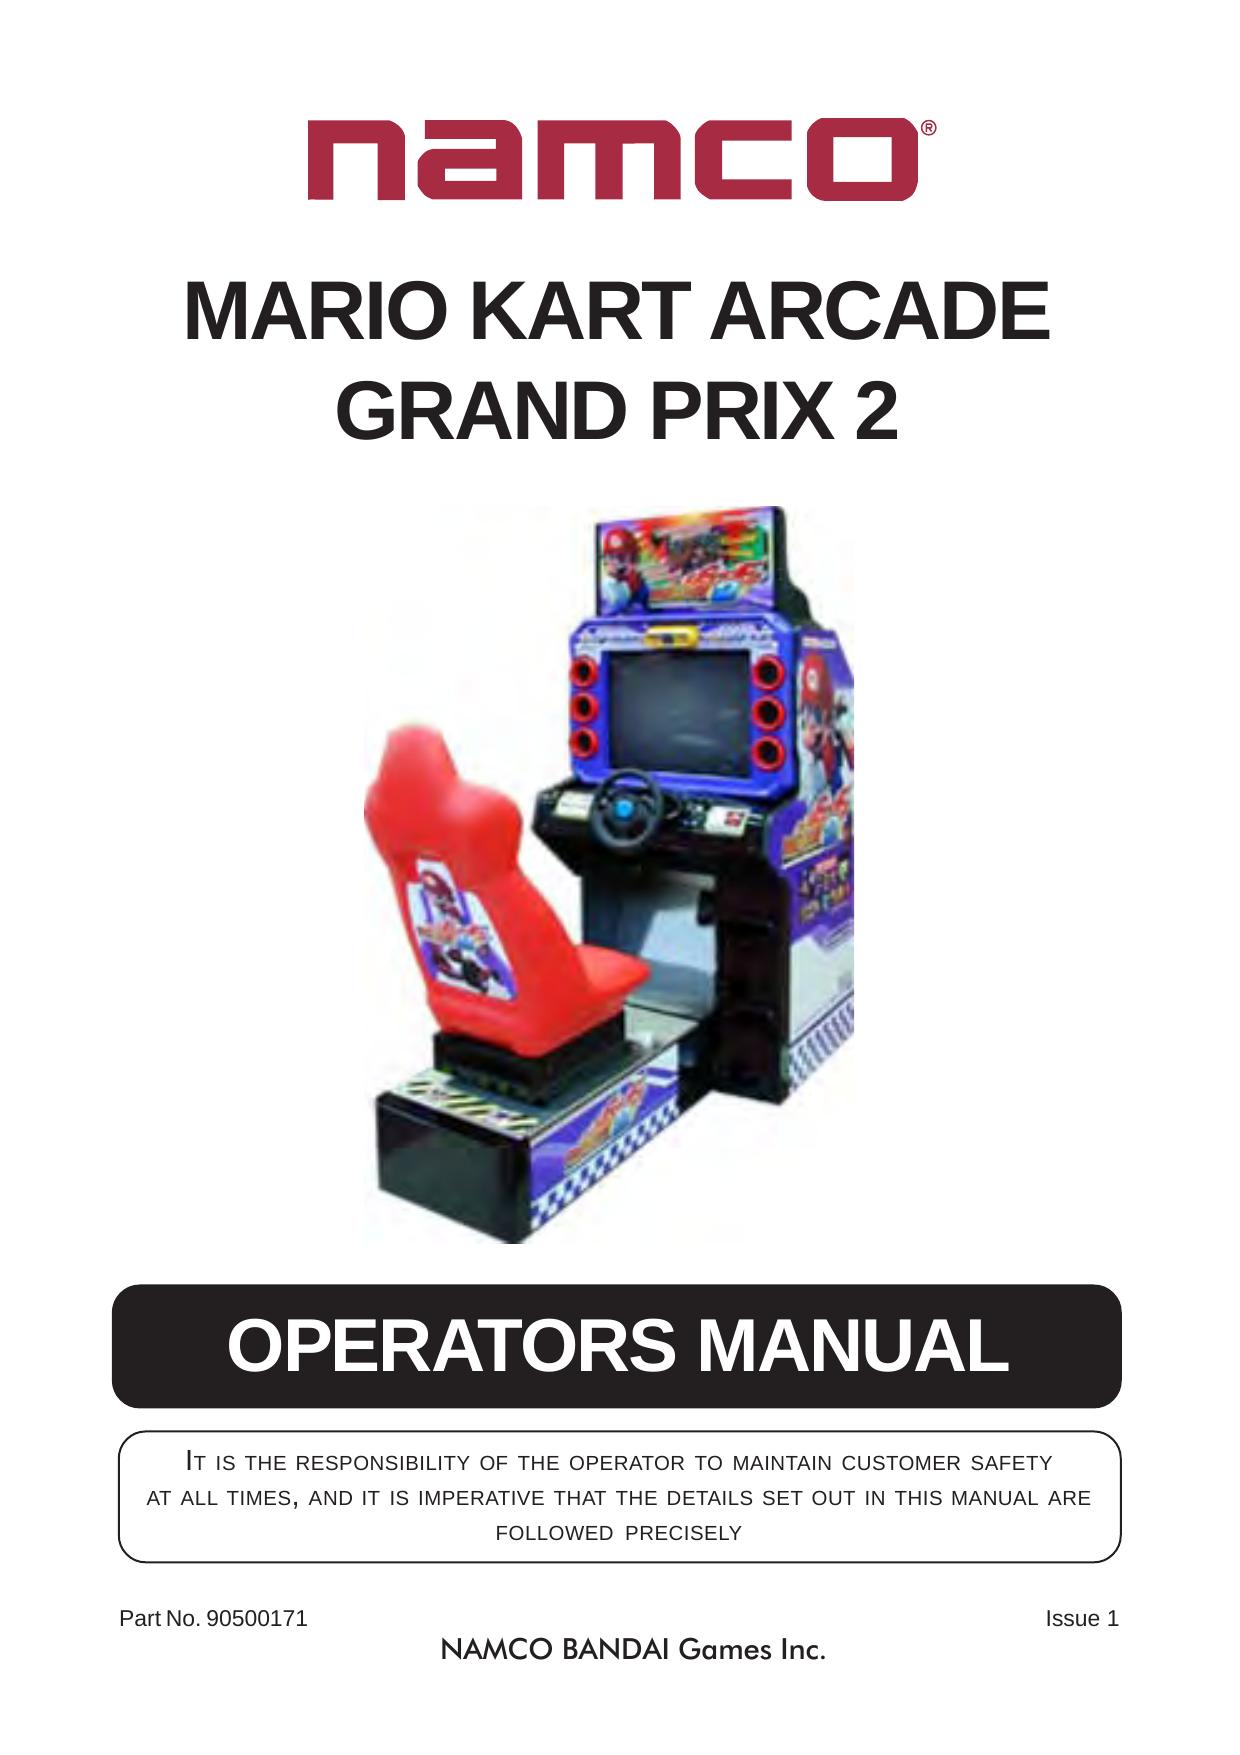 Manual MarioKart 2